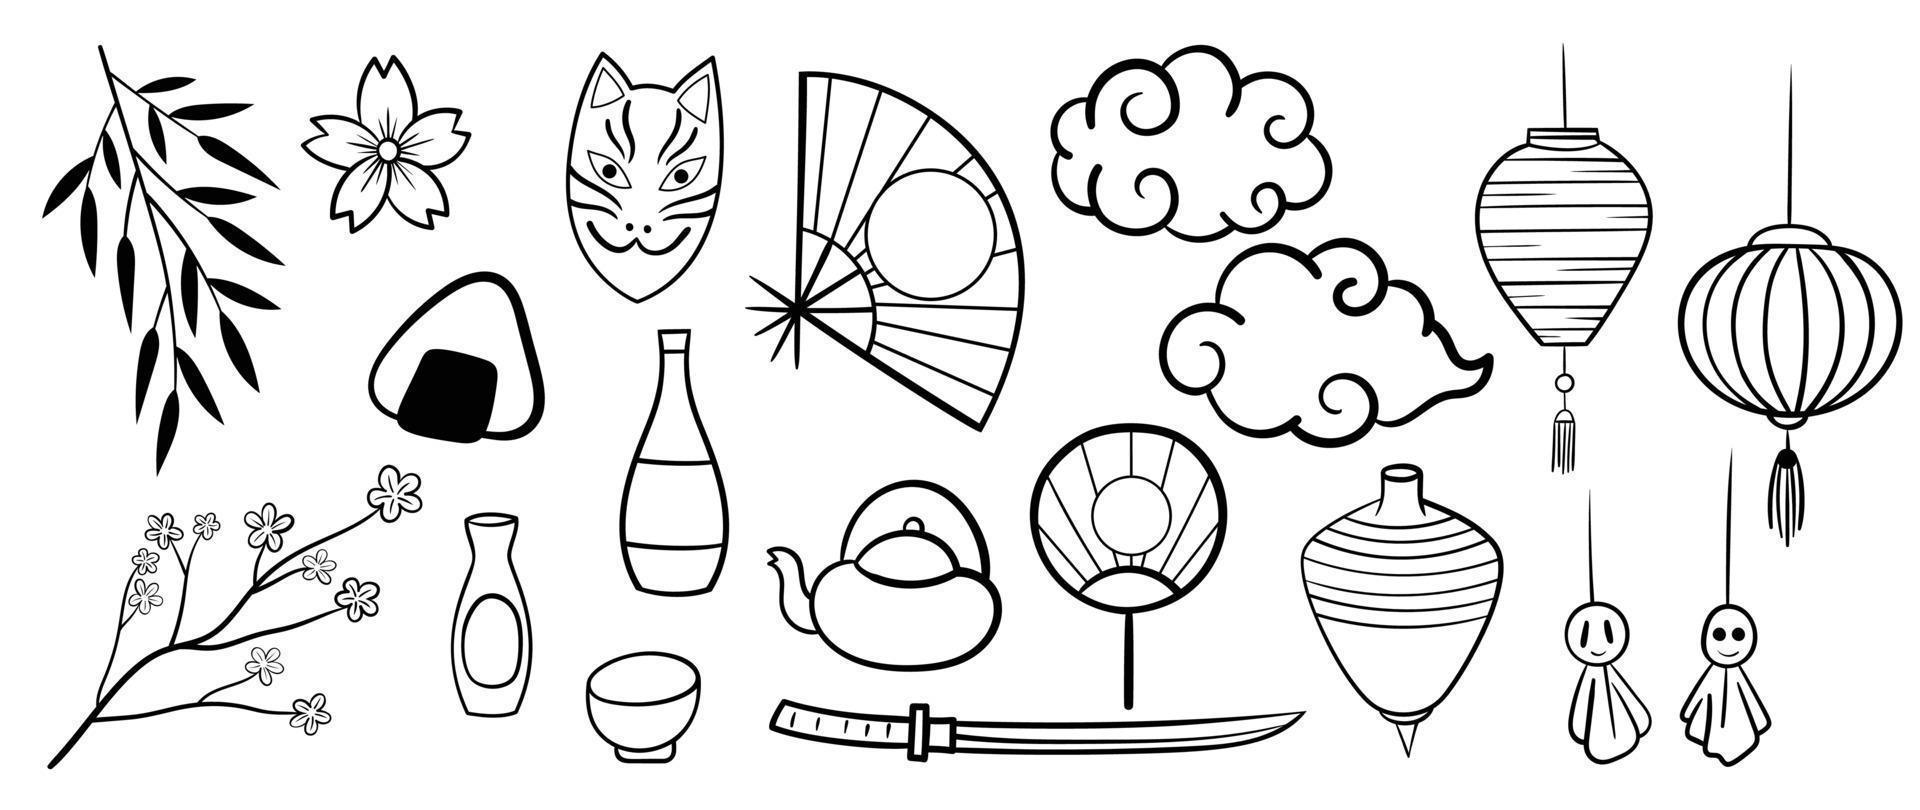 nieuw jaar element Japans stijl vector set. hand- getrokken tekening verzameling van Japans vos masker, fan, bloemen blad tak, wolken, lantaarns, katana zwaard, rijstwijn fles. ontwerp voor sticker, stempel, kaart.